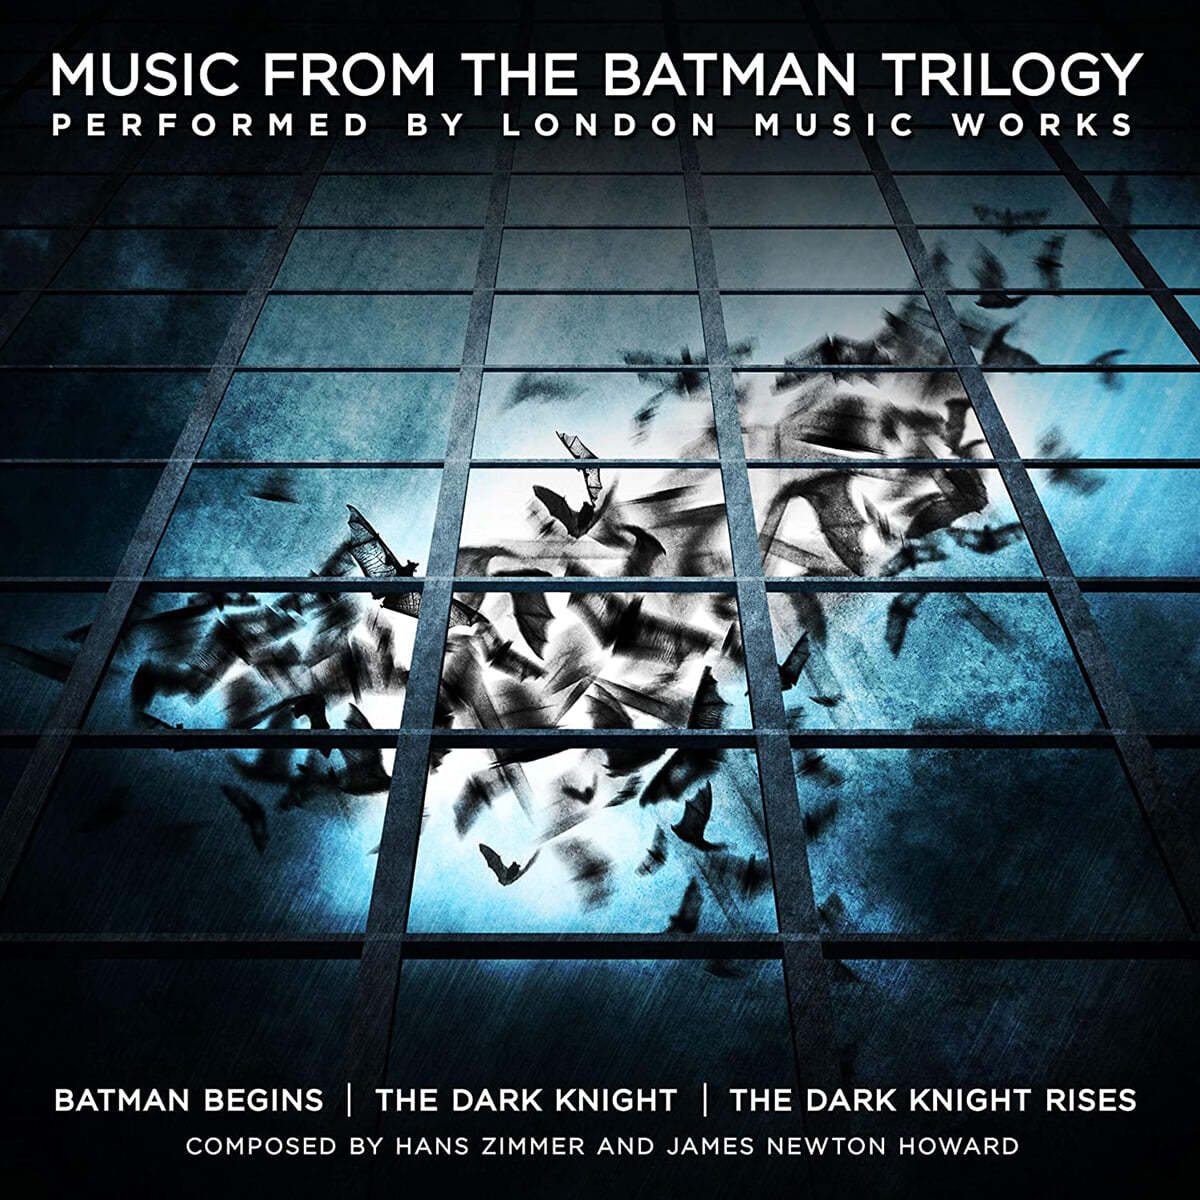 배트맨 트릴로지 영화음악 (Music From The Batman Trilogy by Hans Zimmer / James Newton Howard) [옐로우 컬러 2LP] 